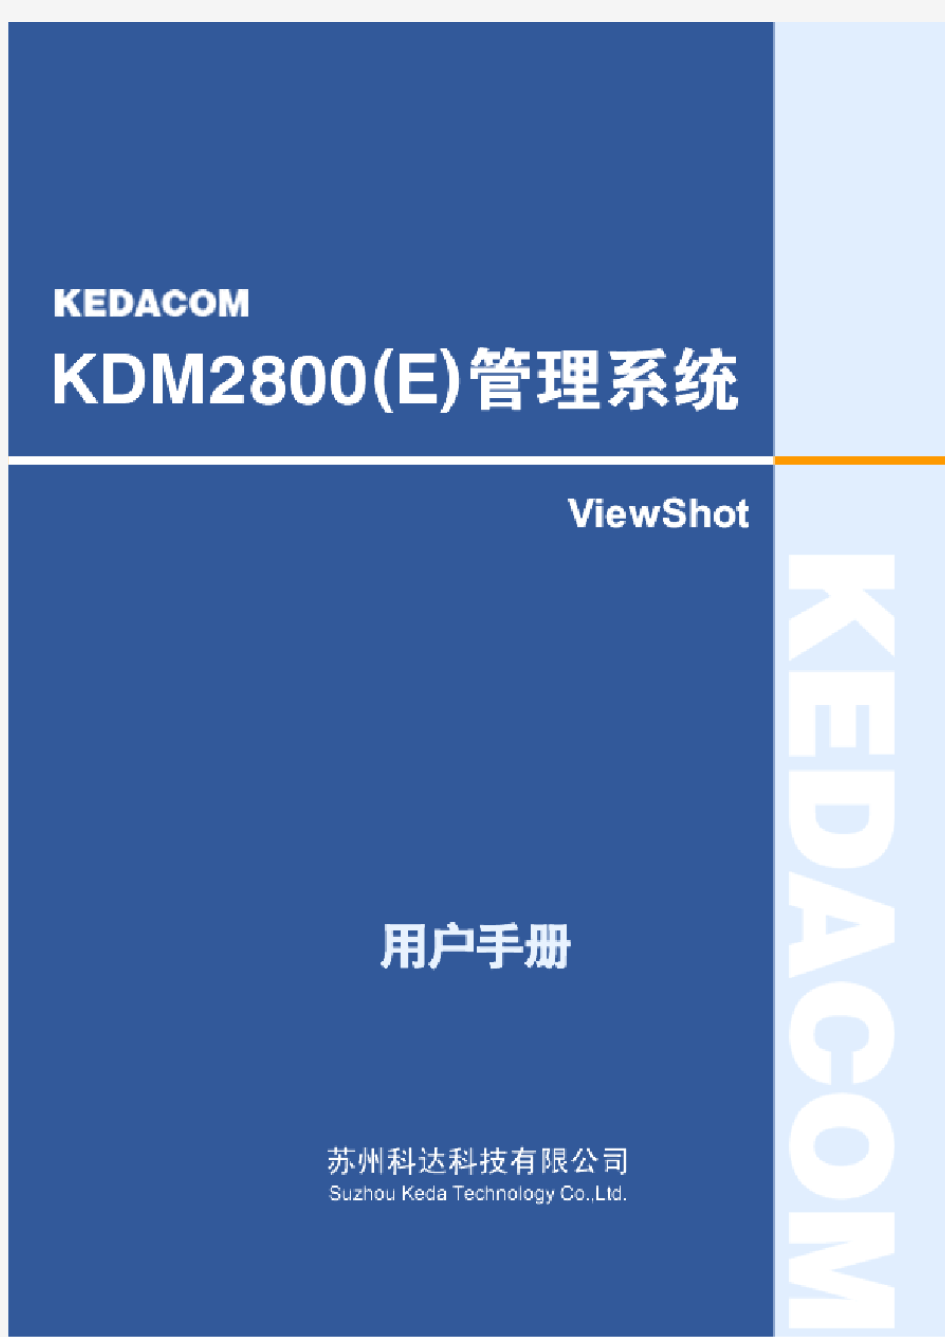 KDM2800(E)管理系统用户手册